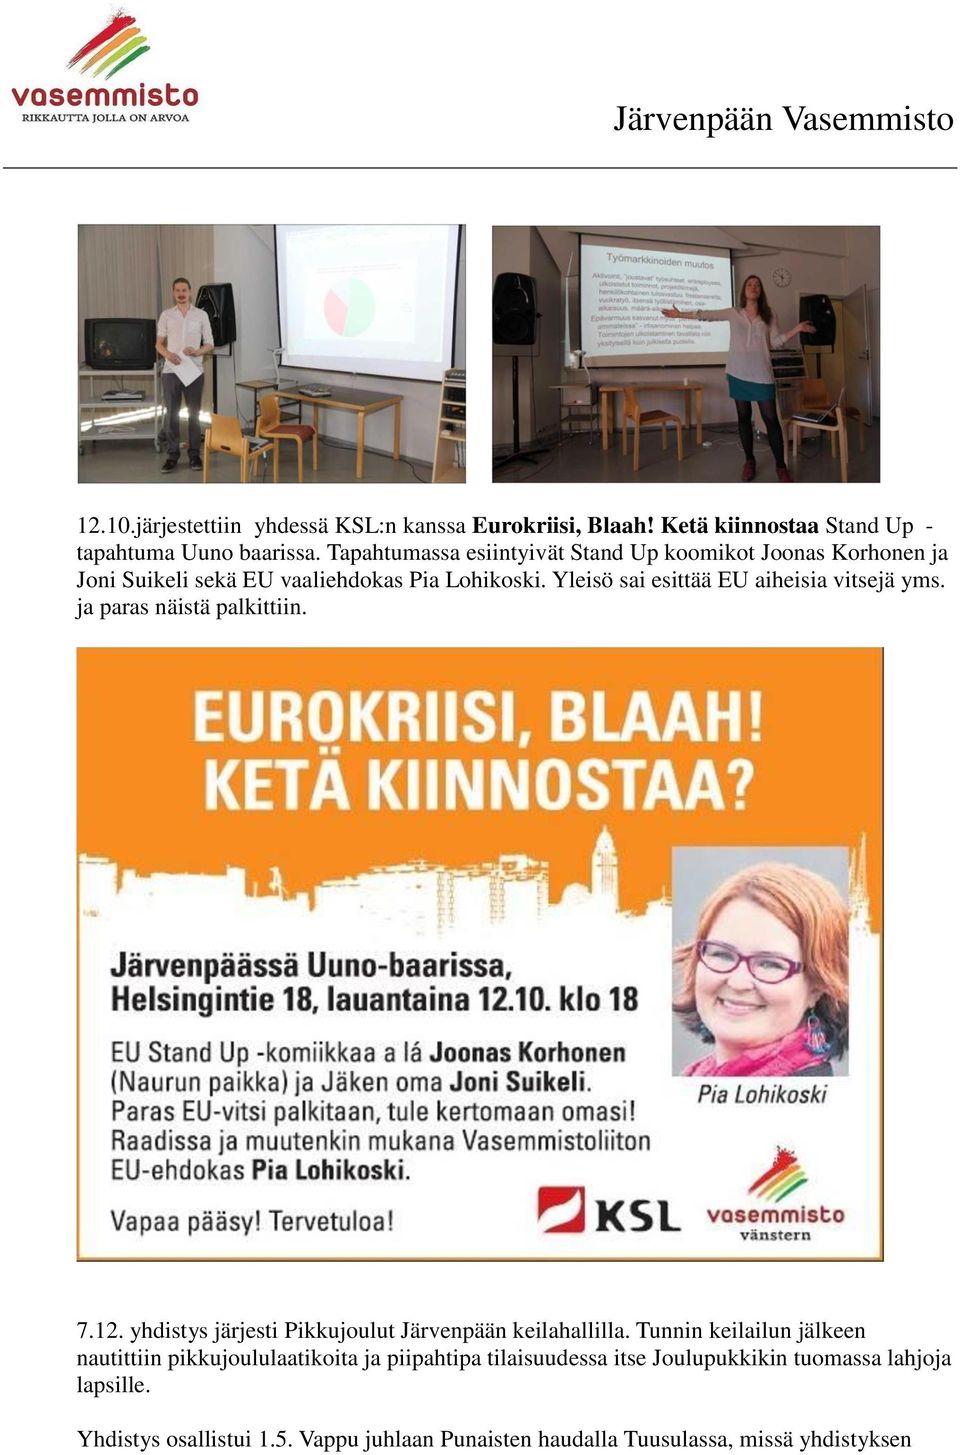 Yleisö sai esittää EU aiheisia vitsejä yms. ja paras näistä palkittiin. 7.12. yhdistys järjesti Pikkujoulut Järvenpään keilahallilla.